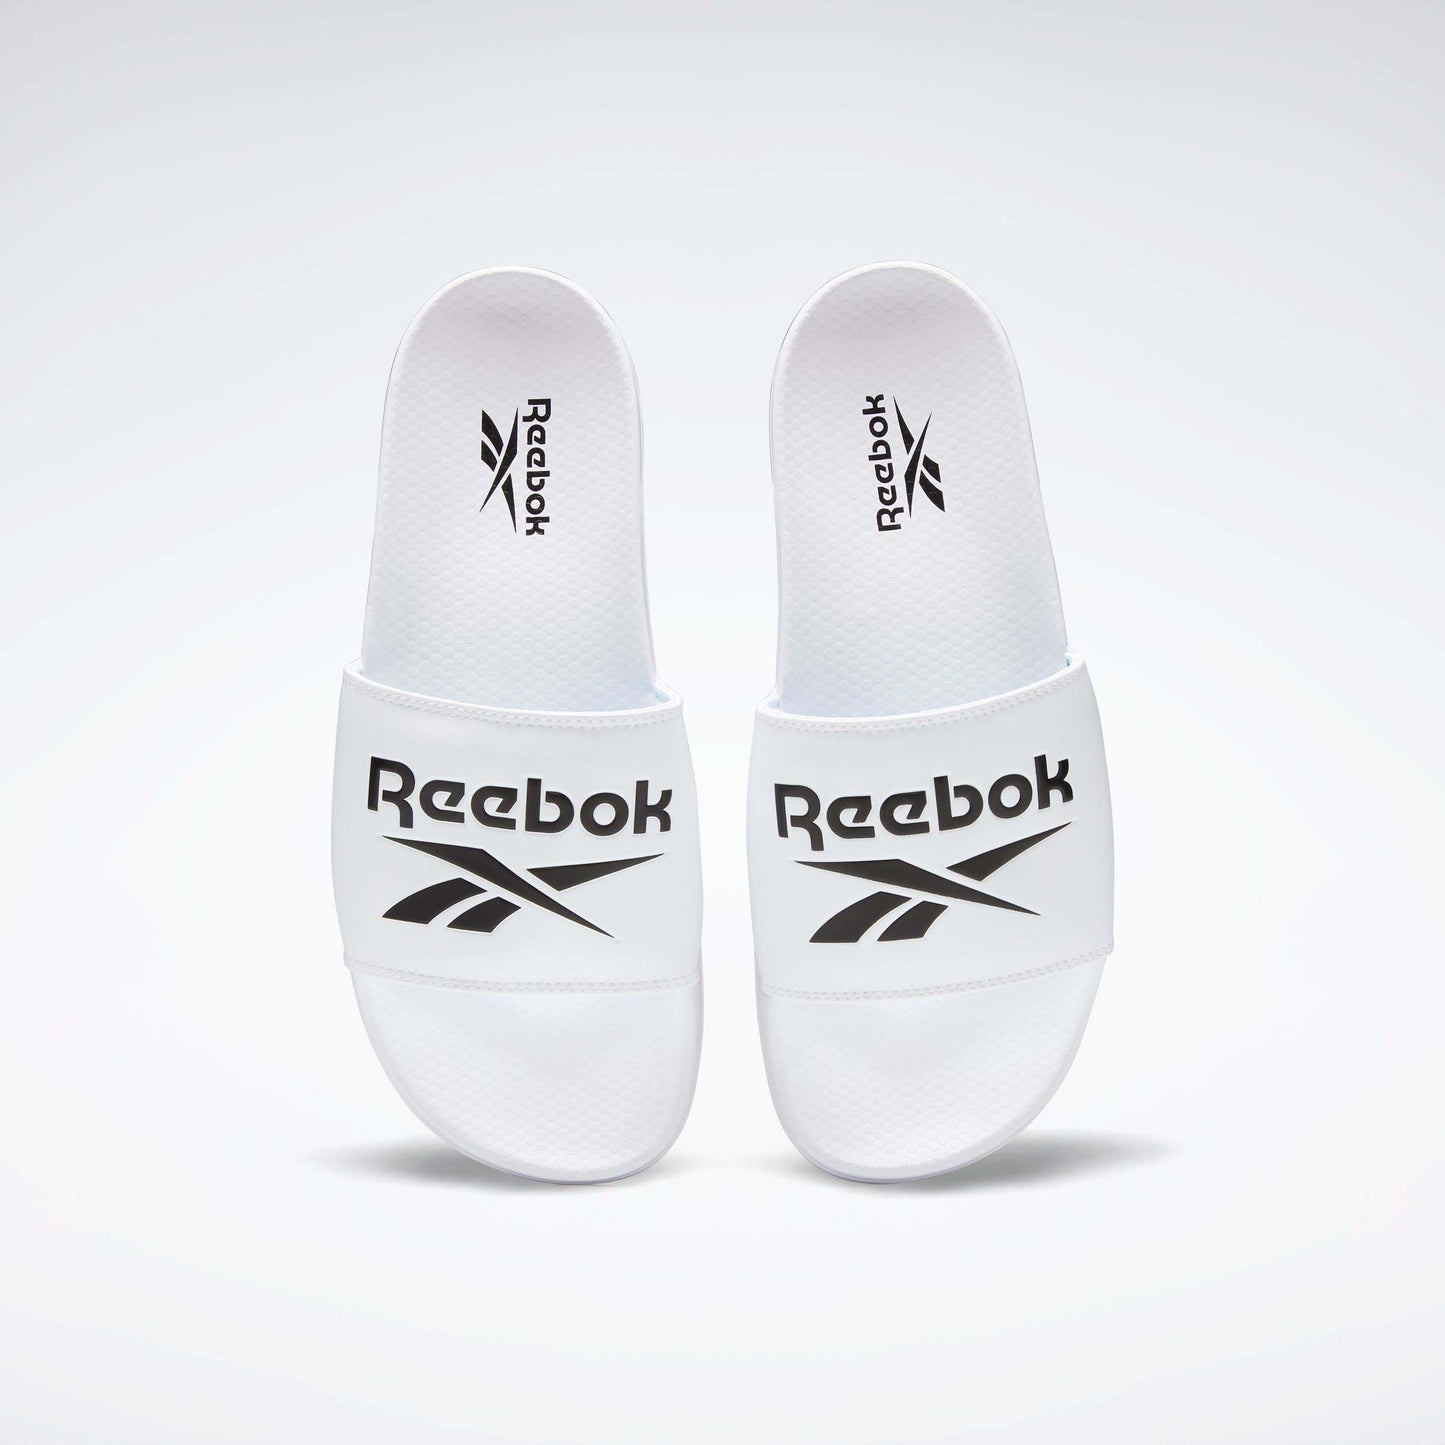 Reebok Classic Slides White/Black/White